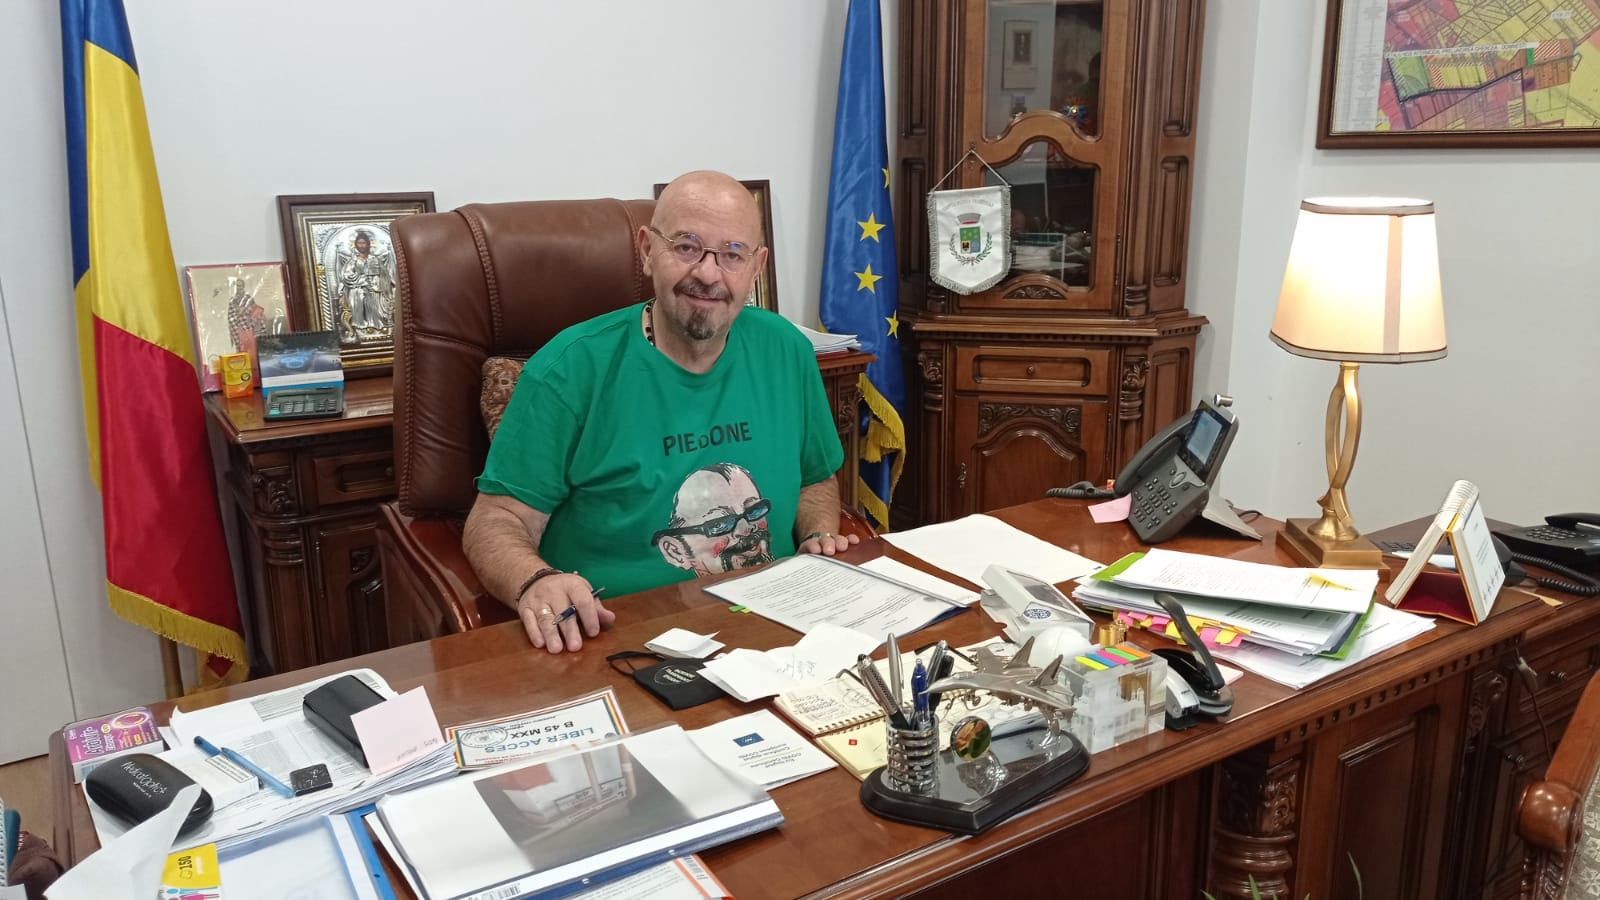 Primarul Piedone le-a adus în case lumină și căldură bucureștenilor batjocoriți de birocrație și înșelați de constructorul blocului